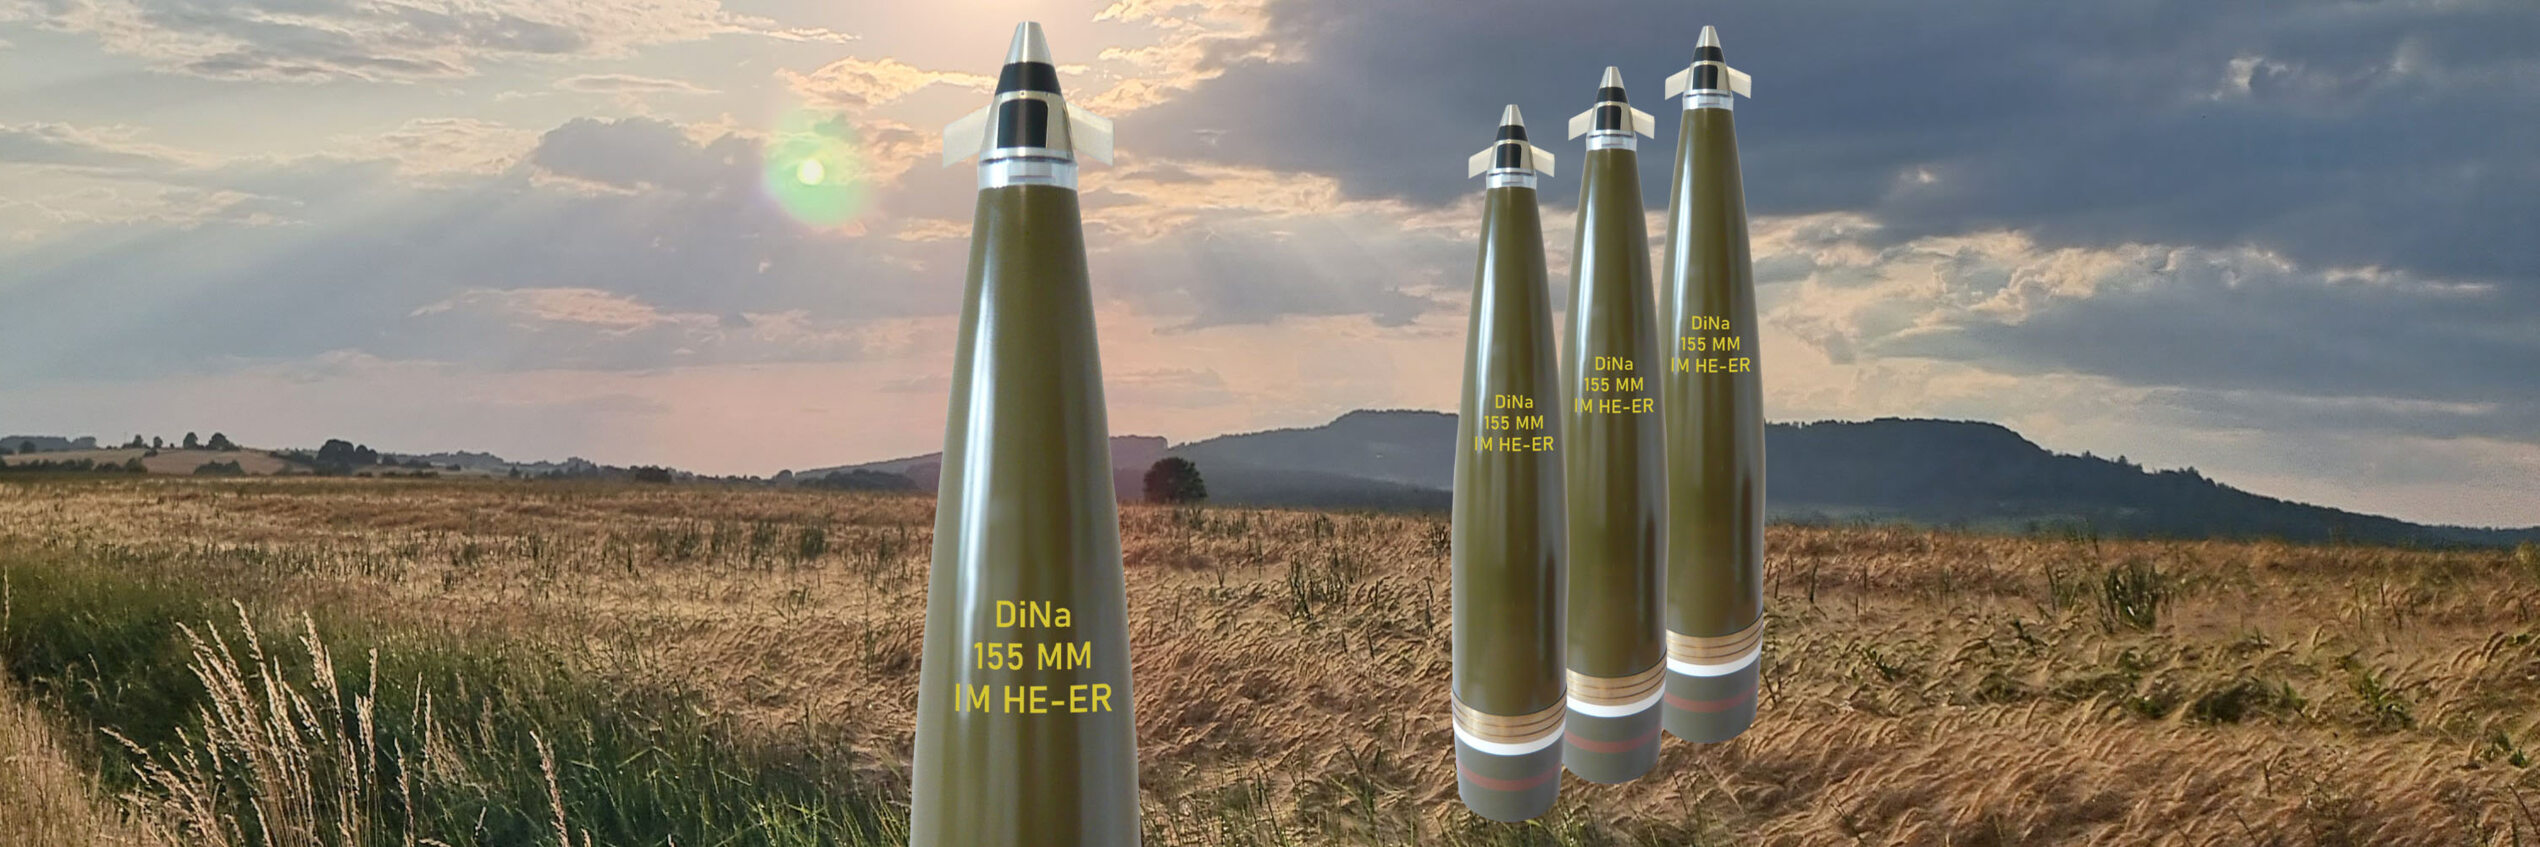 Deutschland beschafft 155mm Artilleriemunition